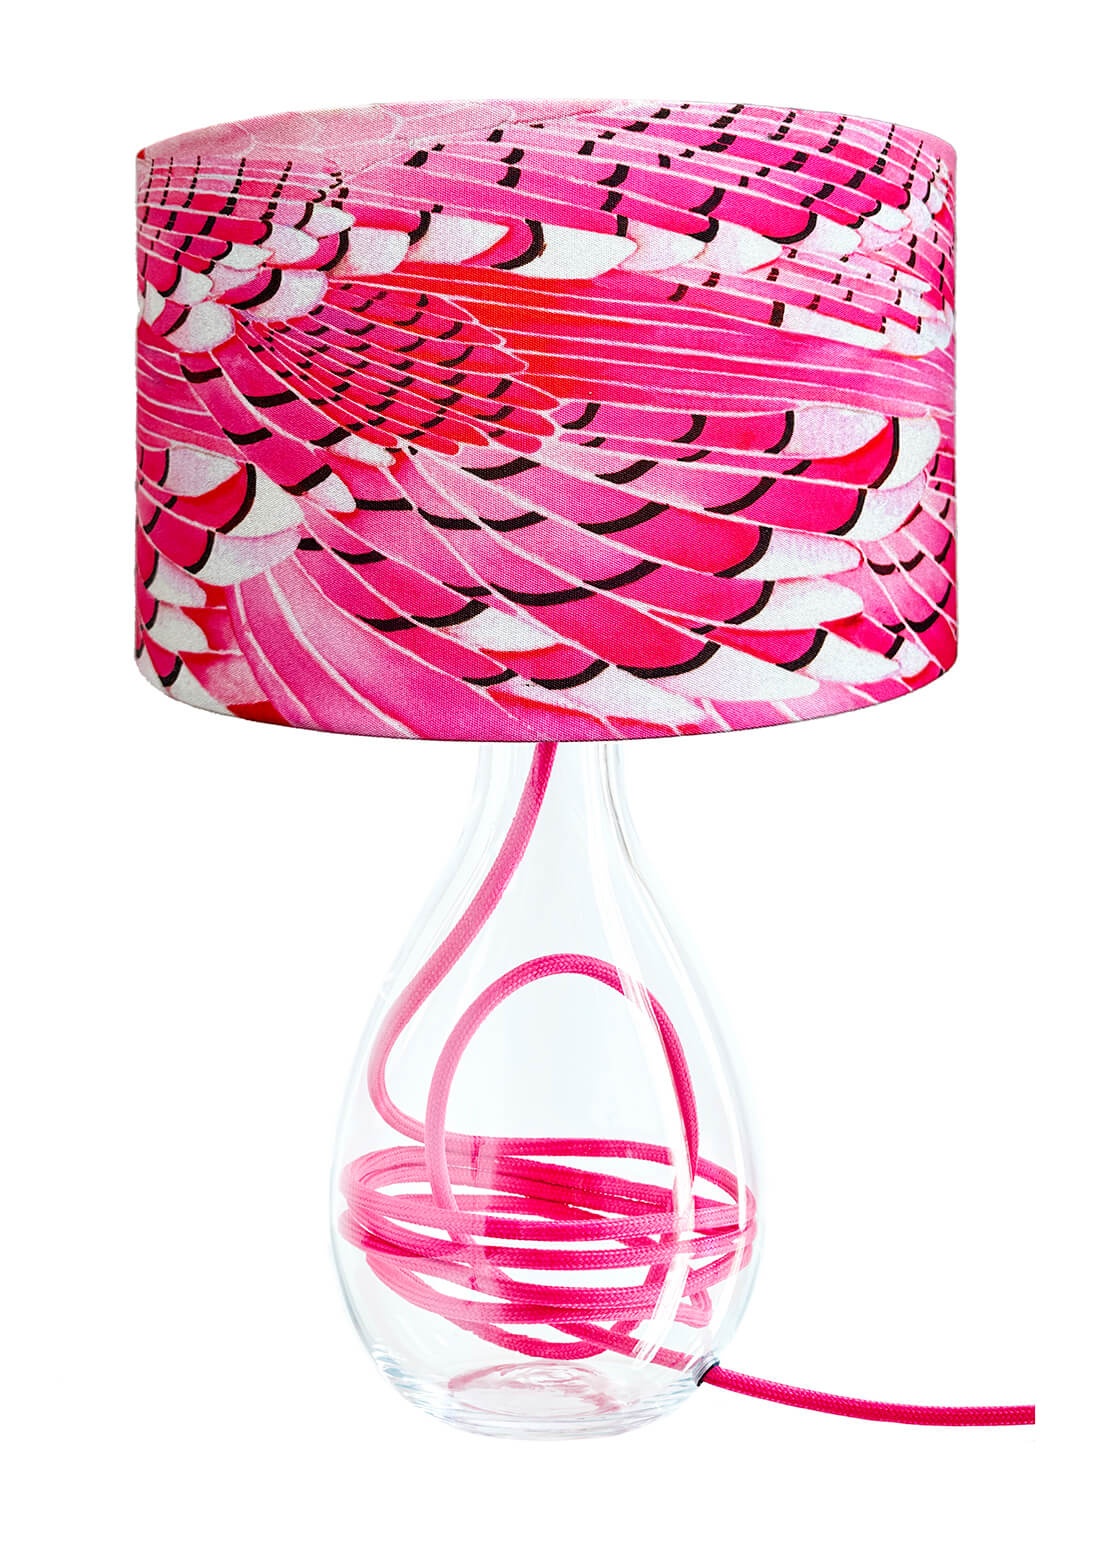 Blue Jay Wing in Pink medium lamp